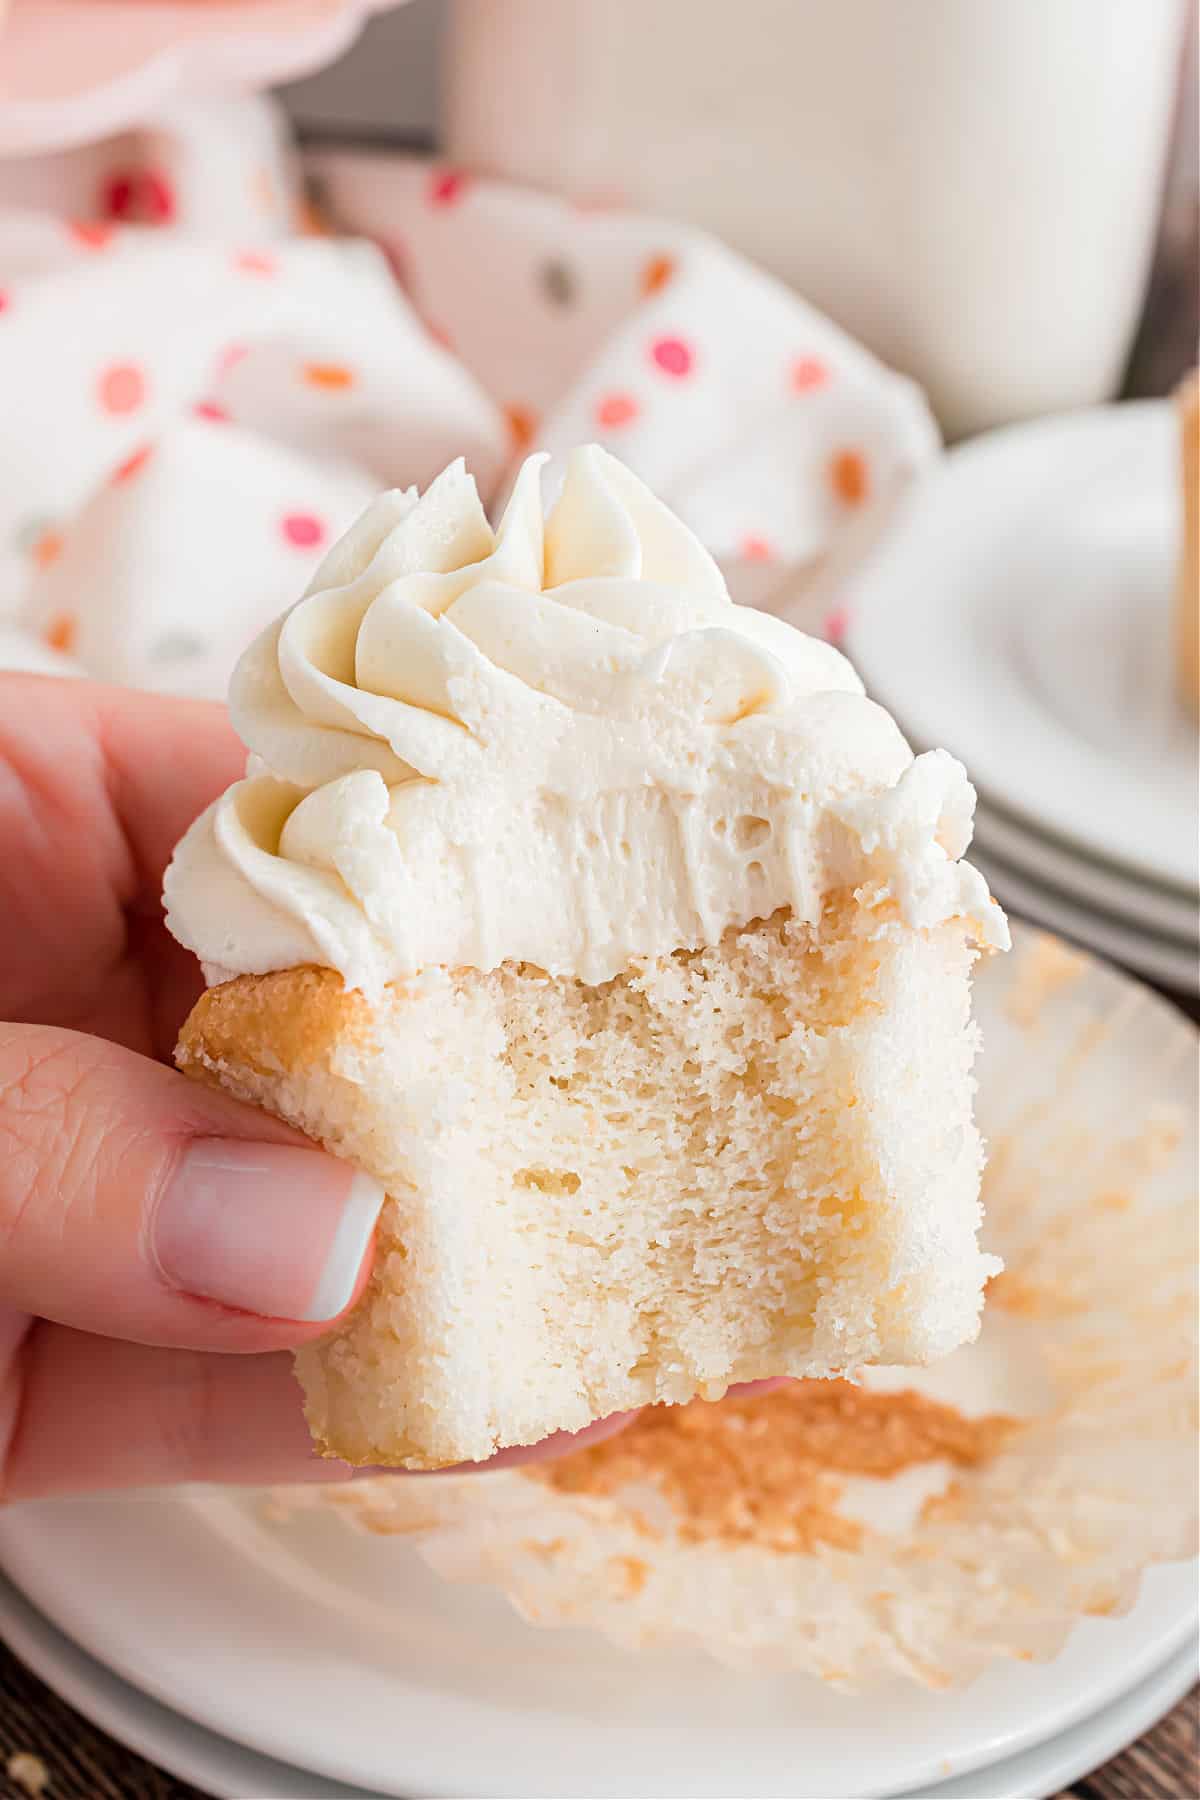 Un morso preso da un cupcake bianco con glassa alla vaniglia.